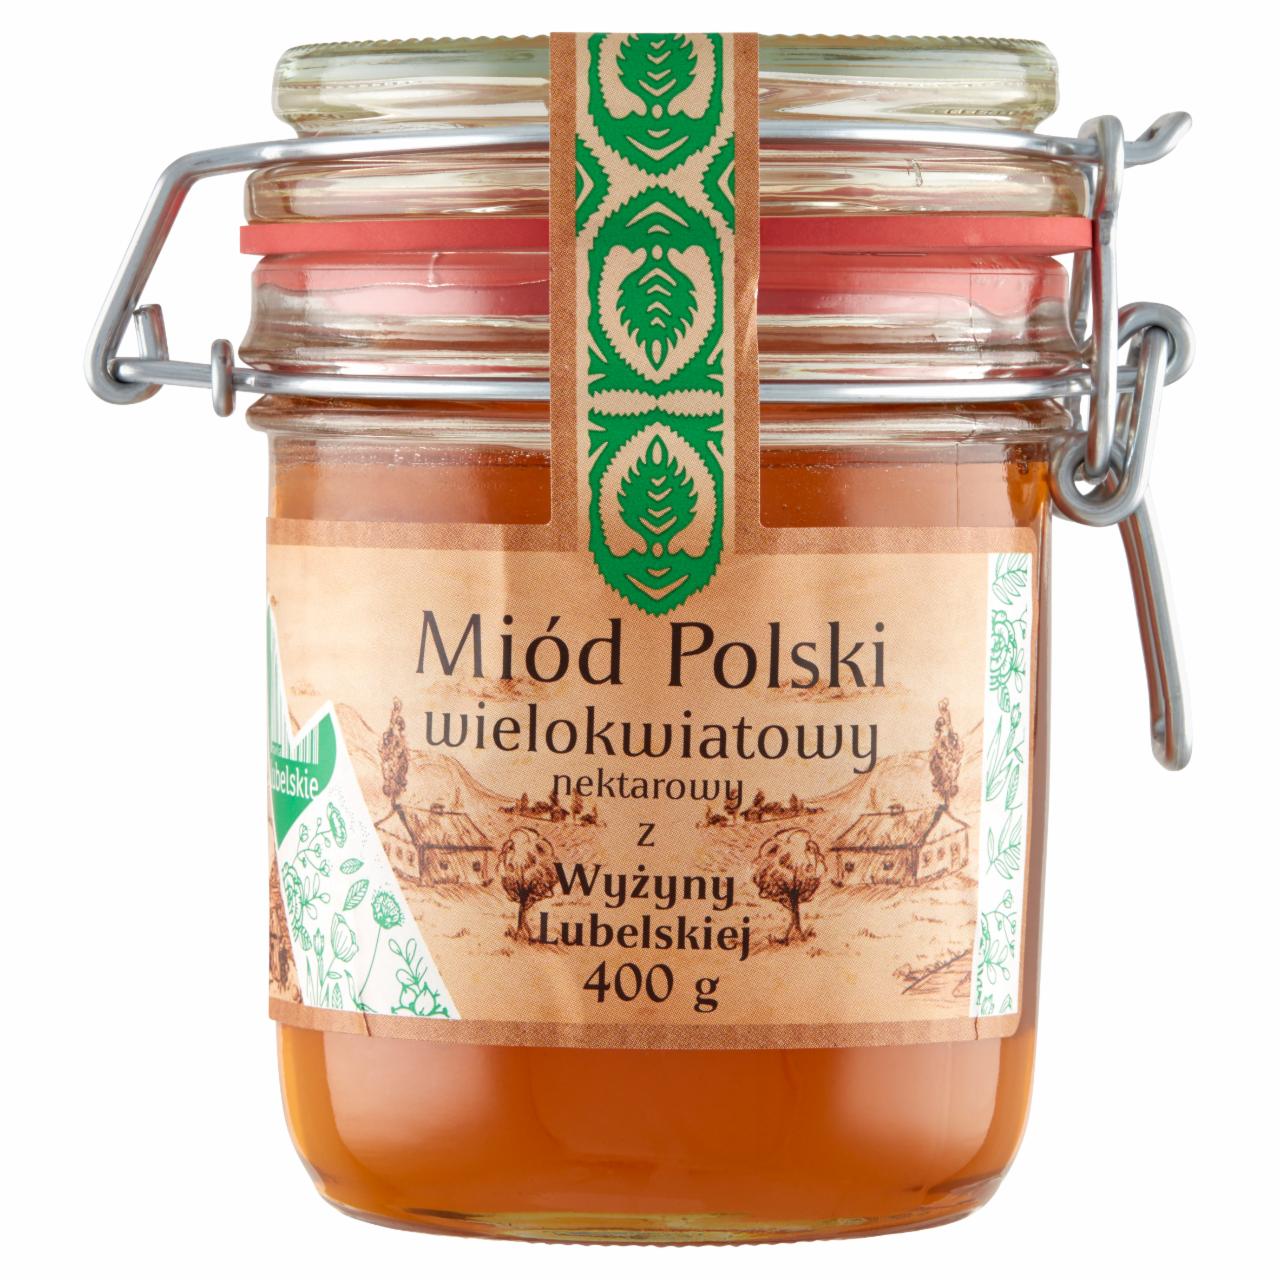 Zdjęcia - Pszczelarz Kozacki Miód polski wielokwiatowy nektarowy 400 g